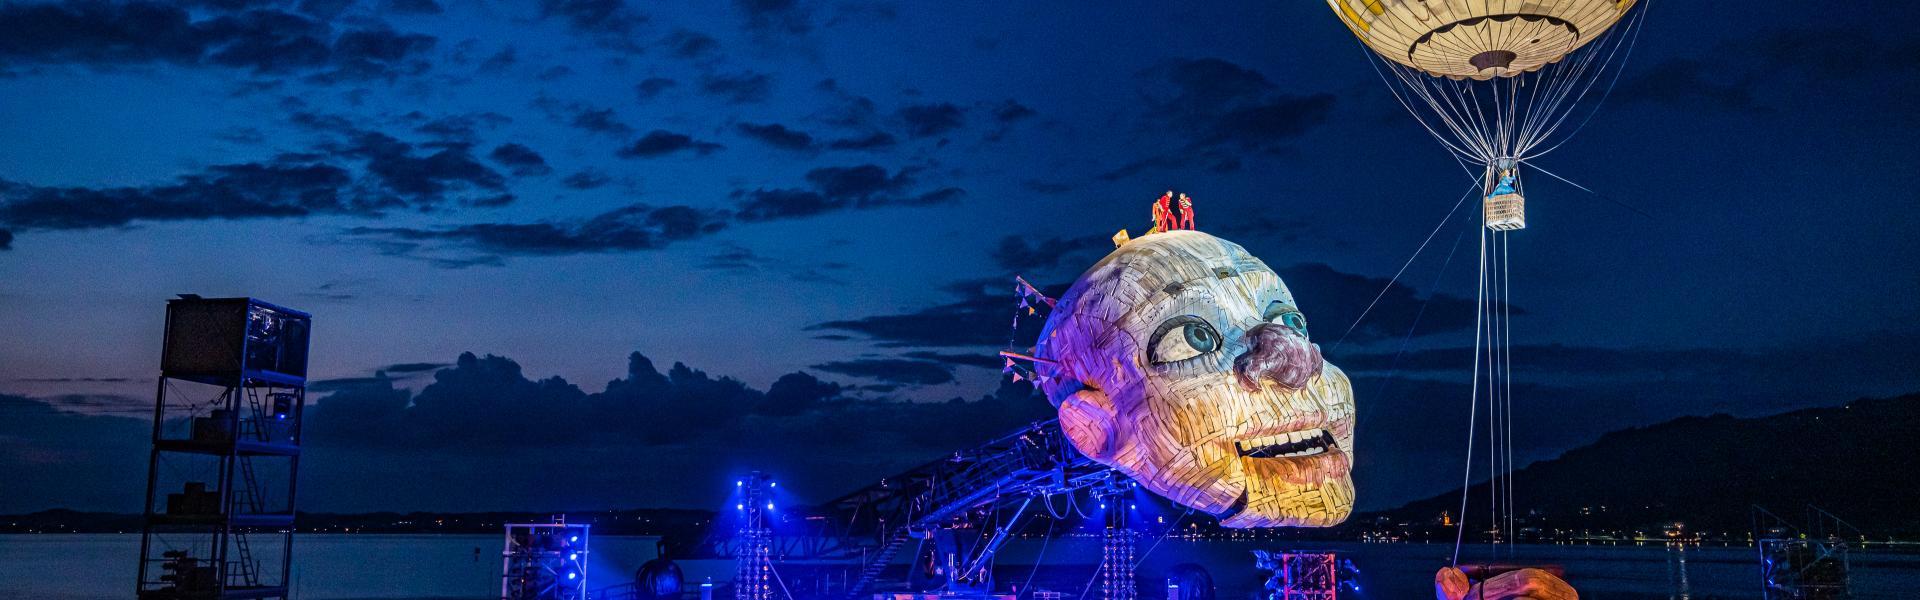 Rigelotto Ballon auf der  Seebühne in Bregenz